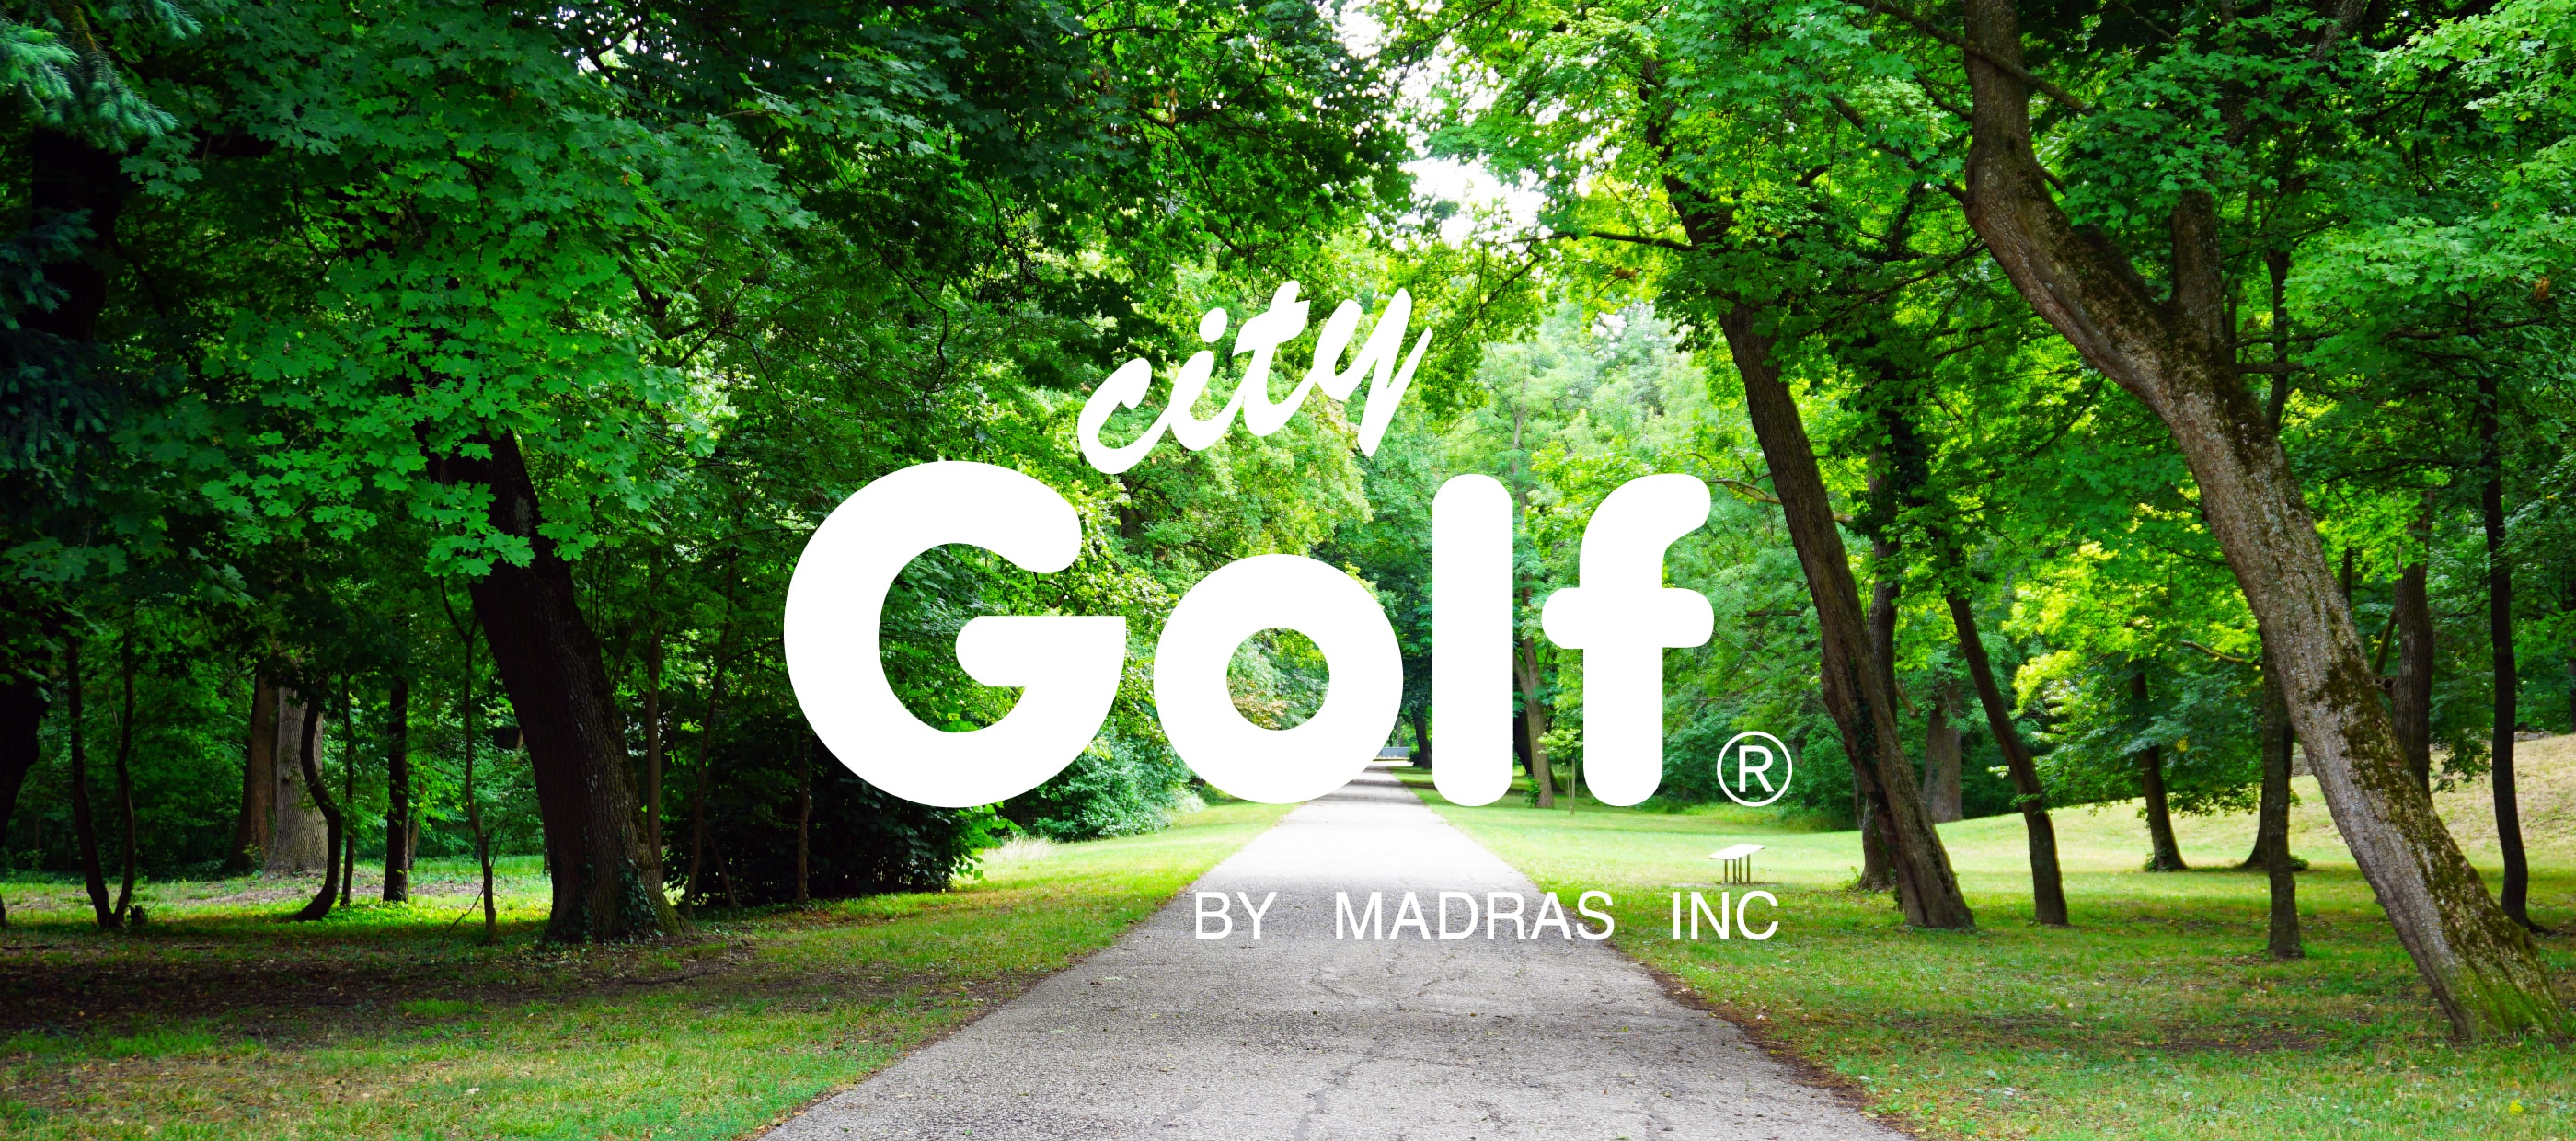 City Golf（シティーゴルフ）の通販 | MADRAS（マドラス）公式